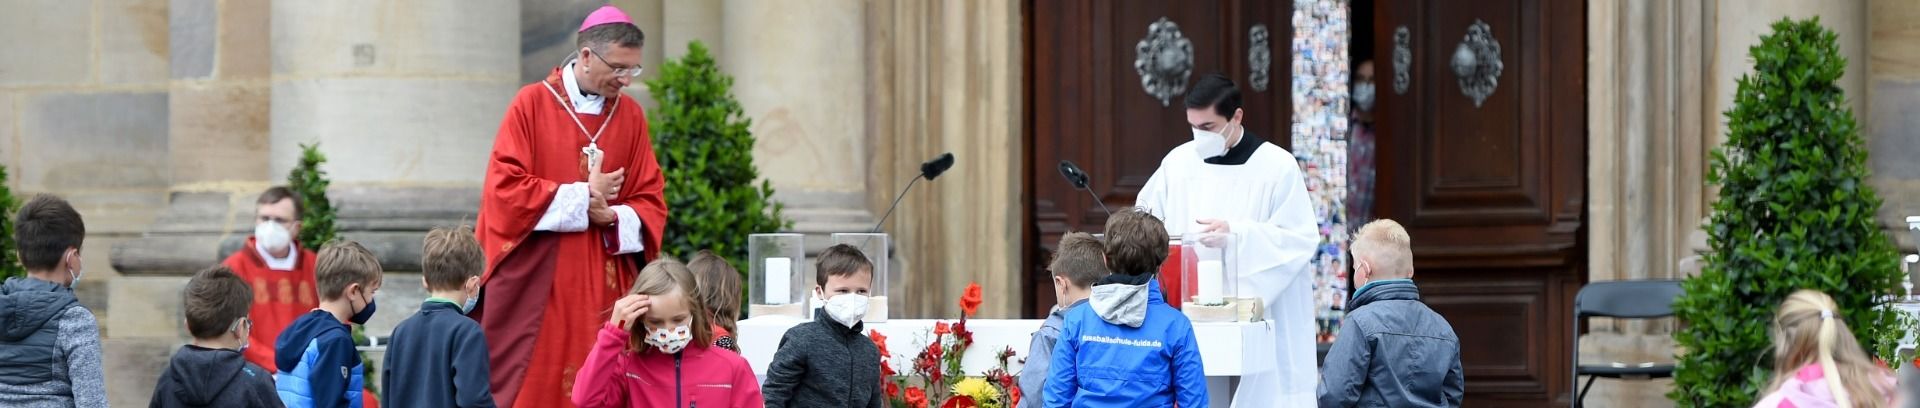 Bistum Fulda feierte Bonifatiusfest pandemiebedingt mit kreativen Formaten  